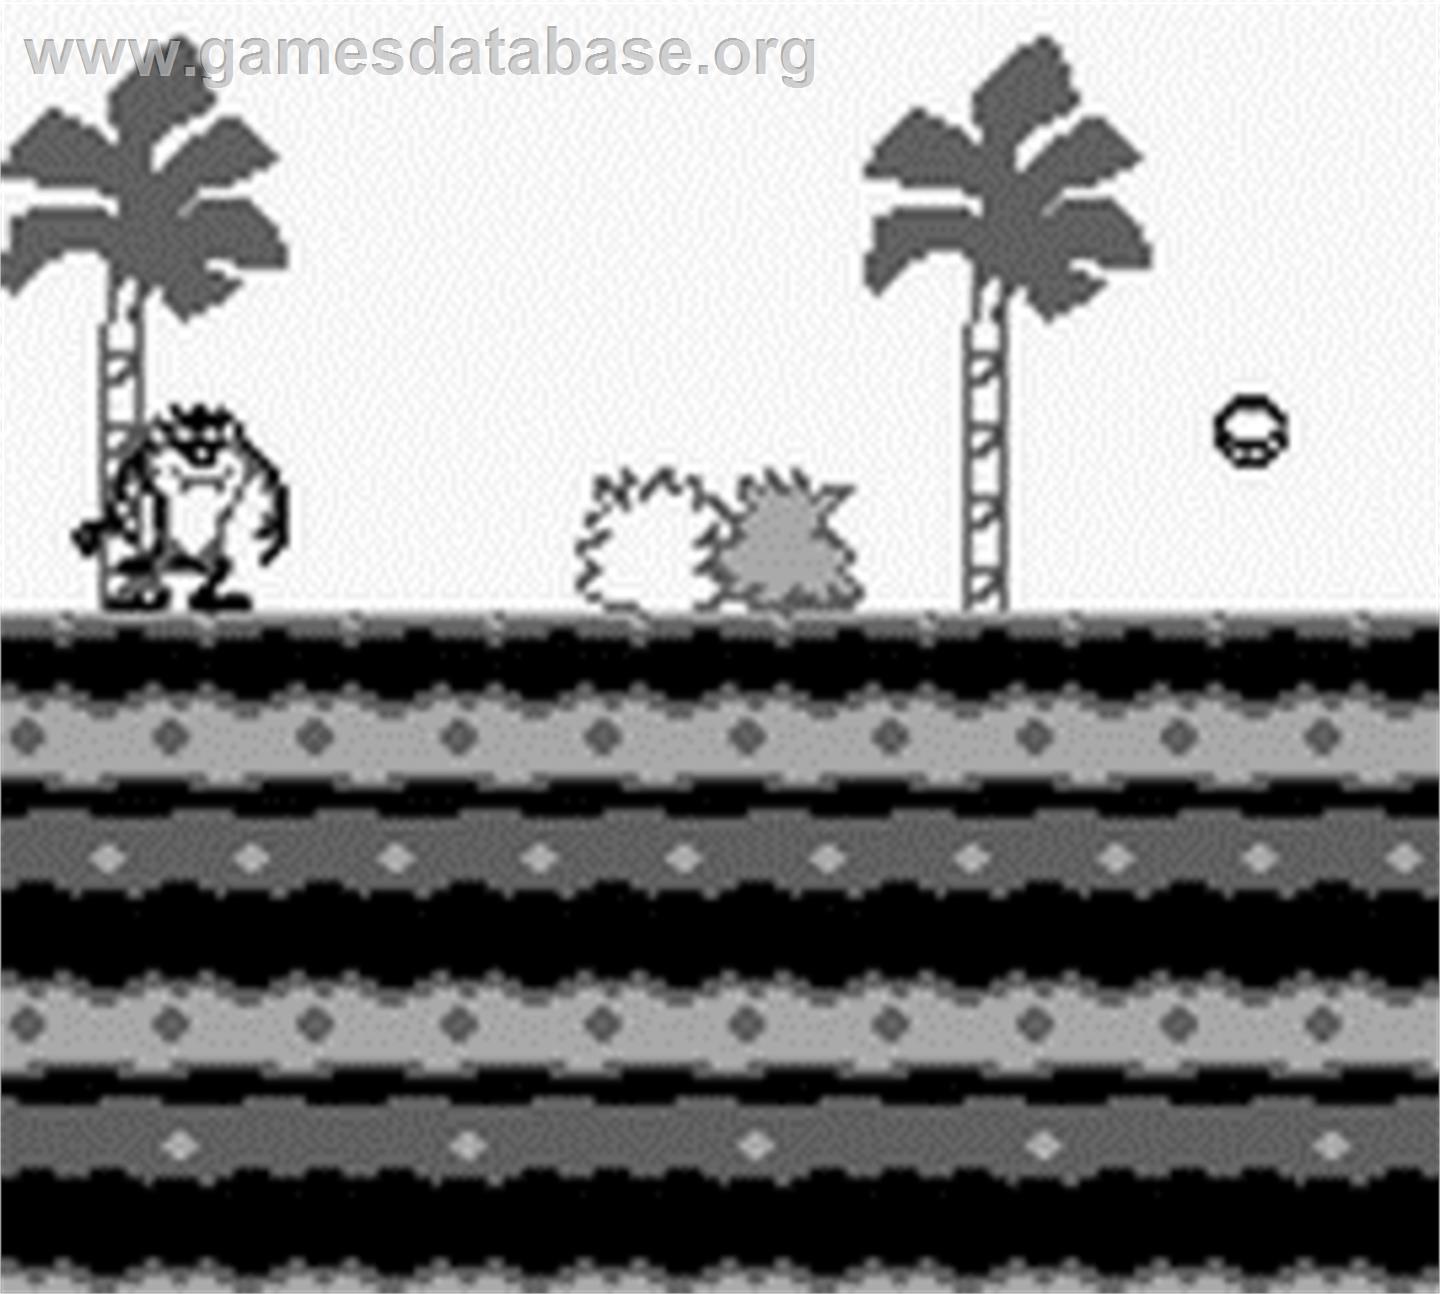 Taz-Mania - Nintendo Game Boy - Artwork - In Game